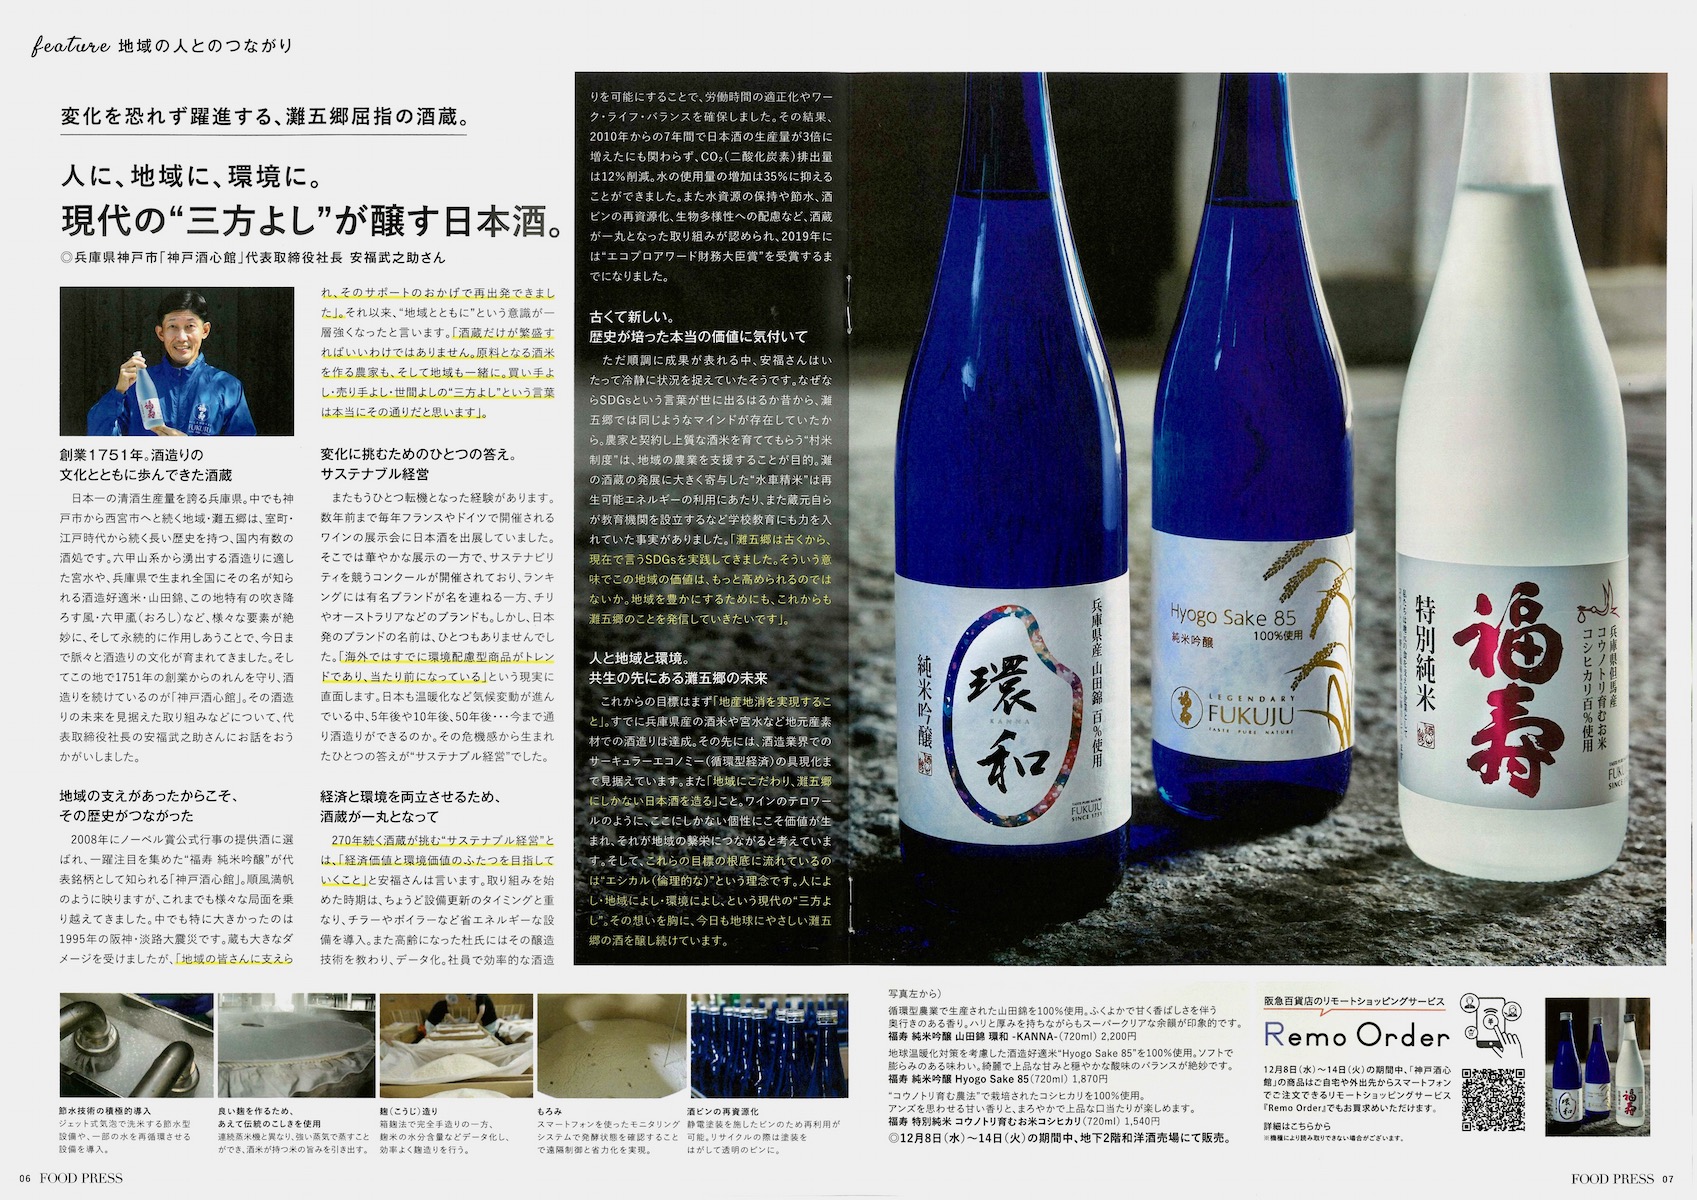 “現代の三方よし”として神戸酒心館の環境への取り組みと酒造りが紹介されました